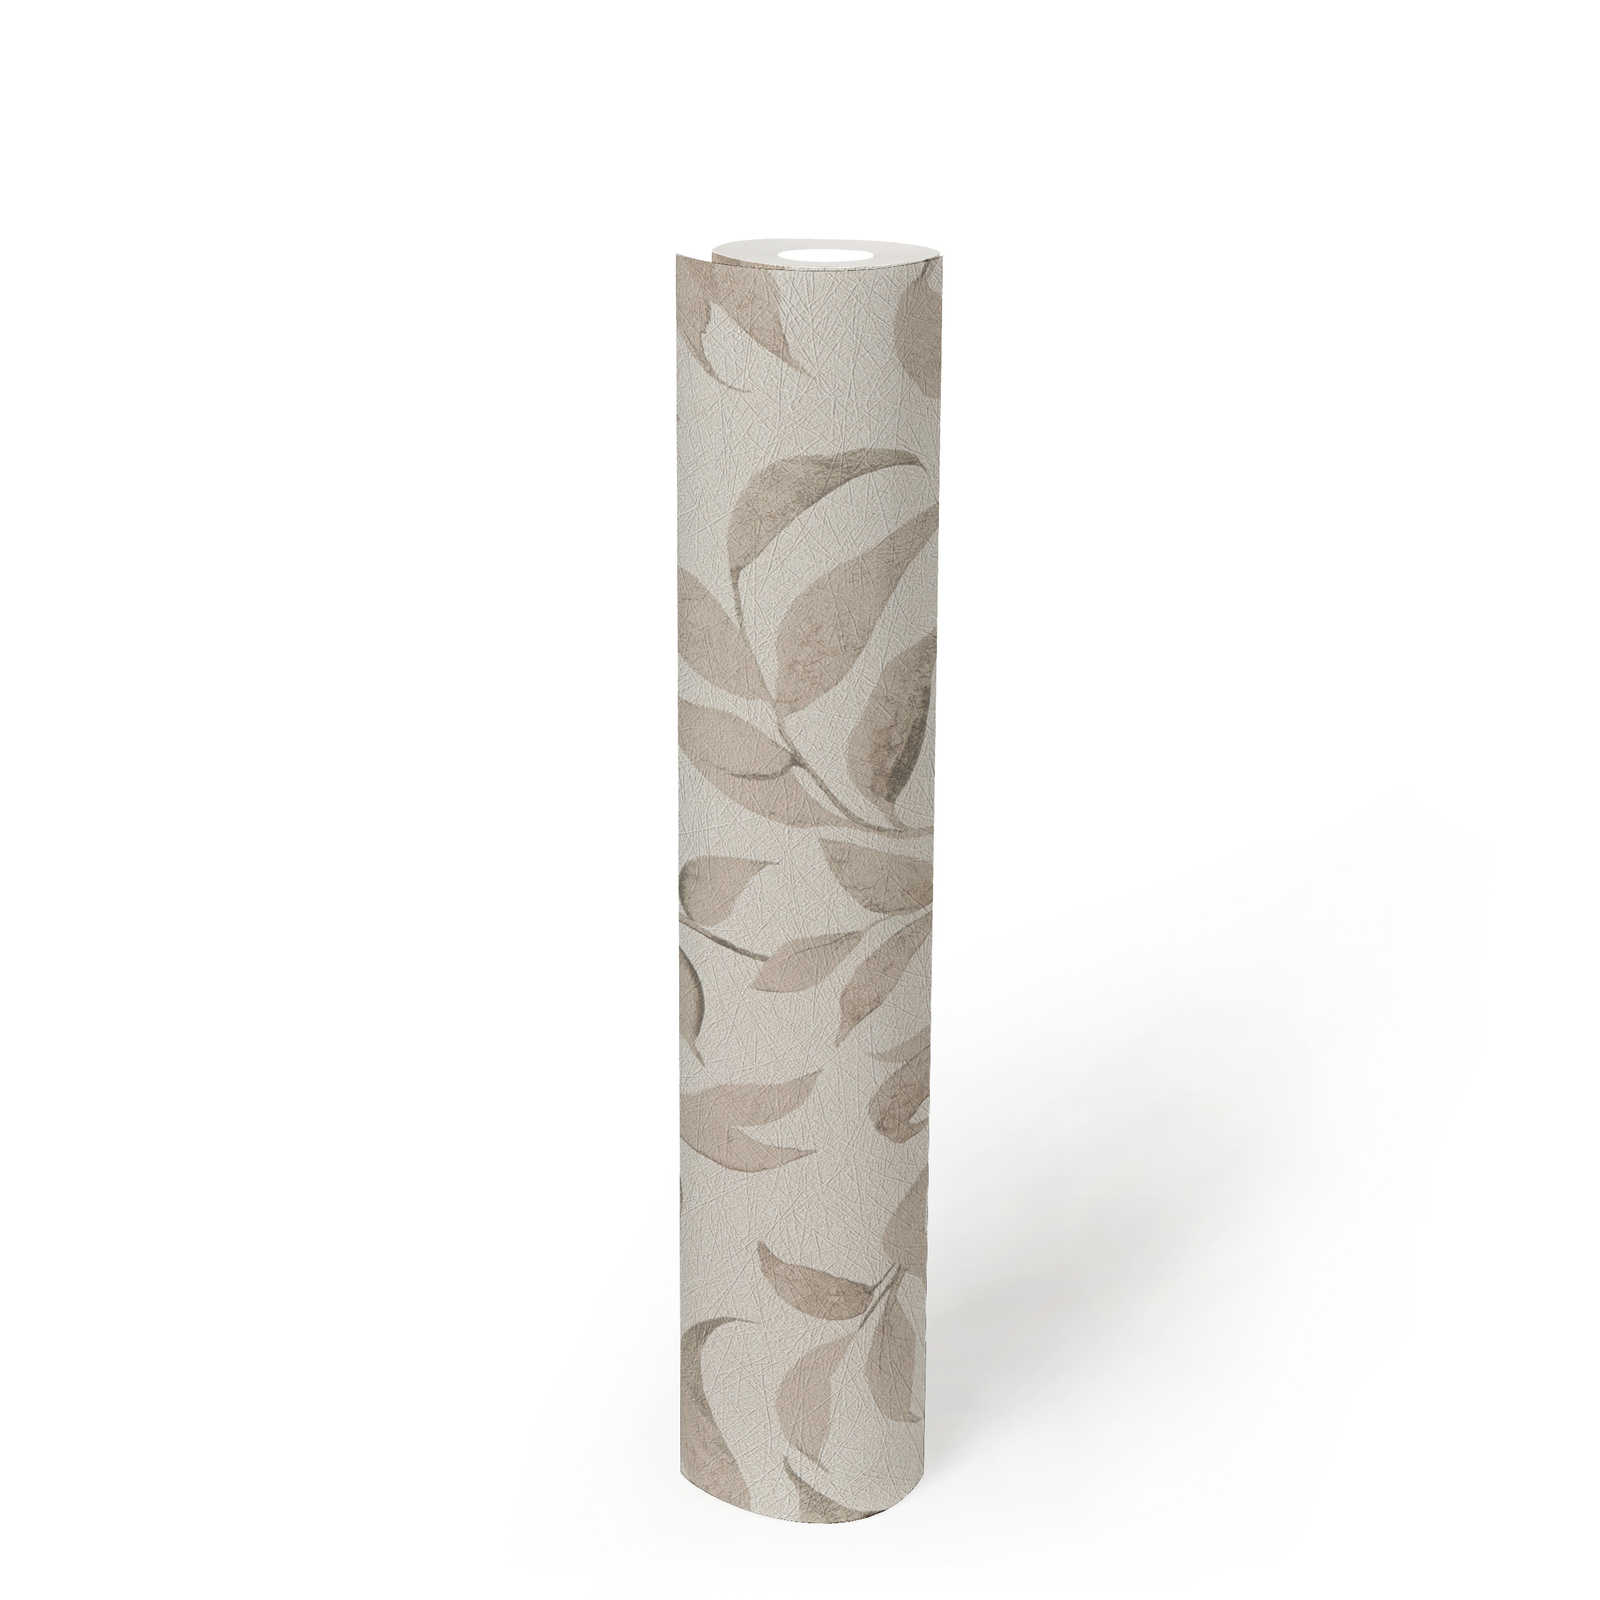             Florale Blätter-Tapete strukturiert schimmernd – Weiß, Grau, Beige
        